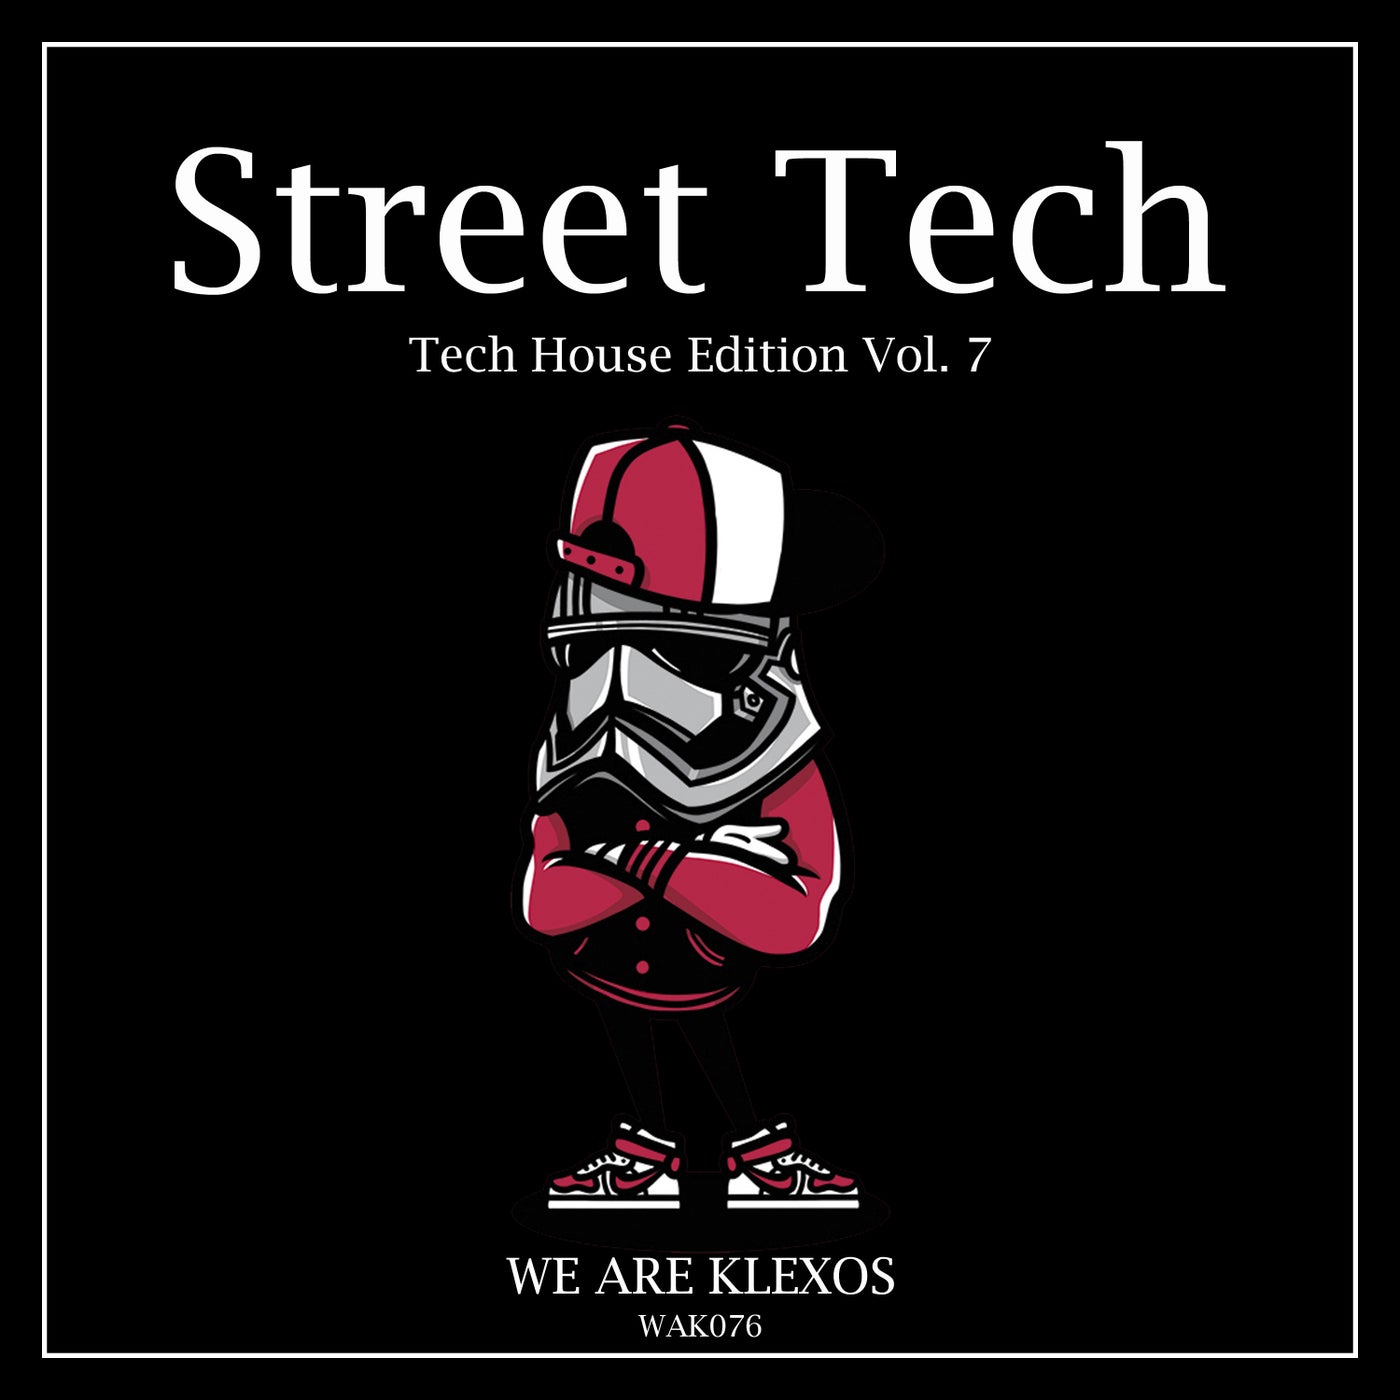 Street Tech, Vol. 7